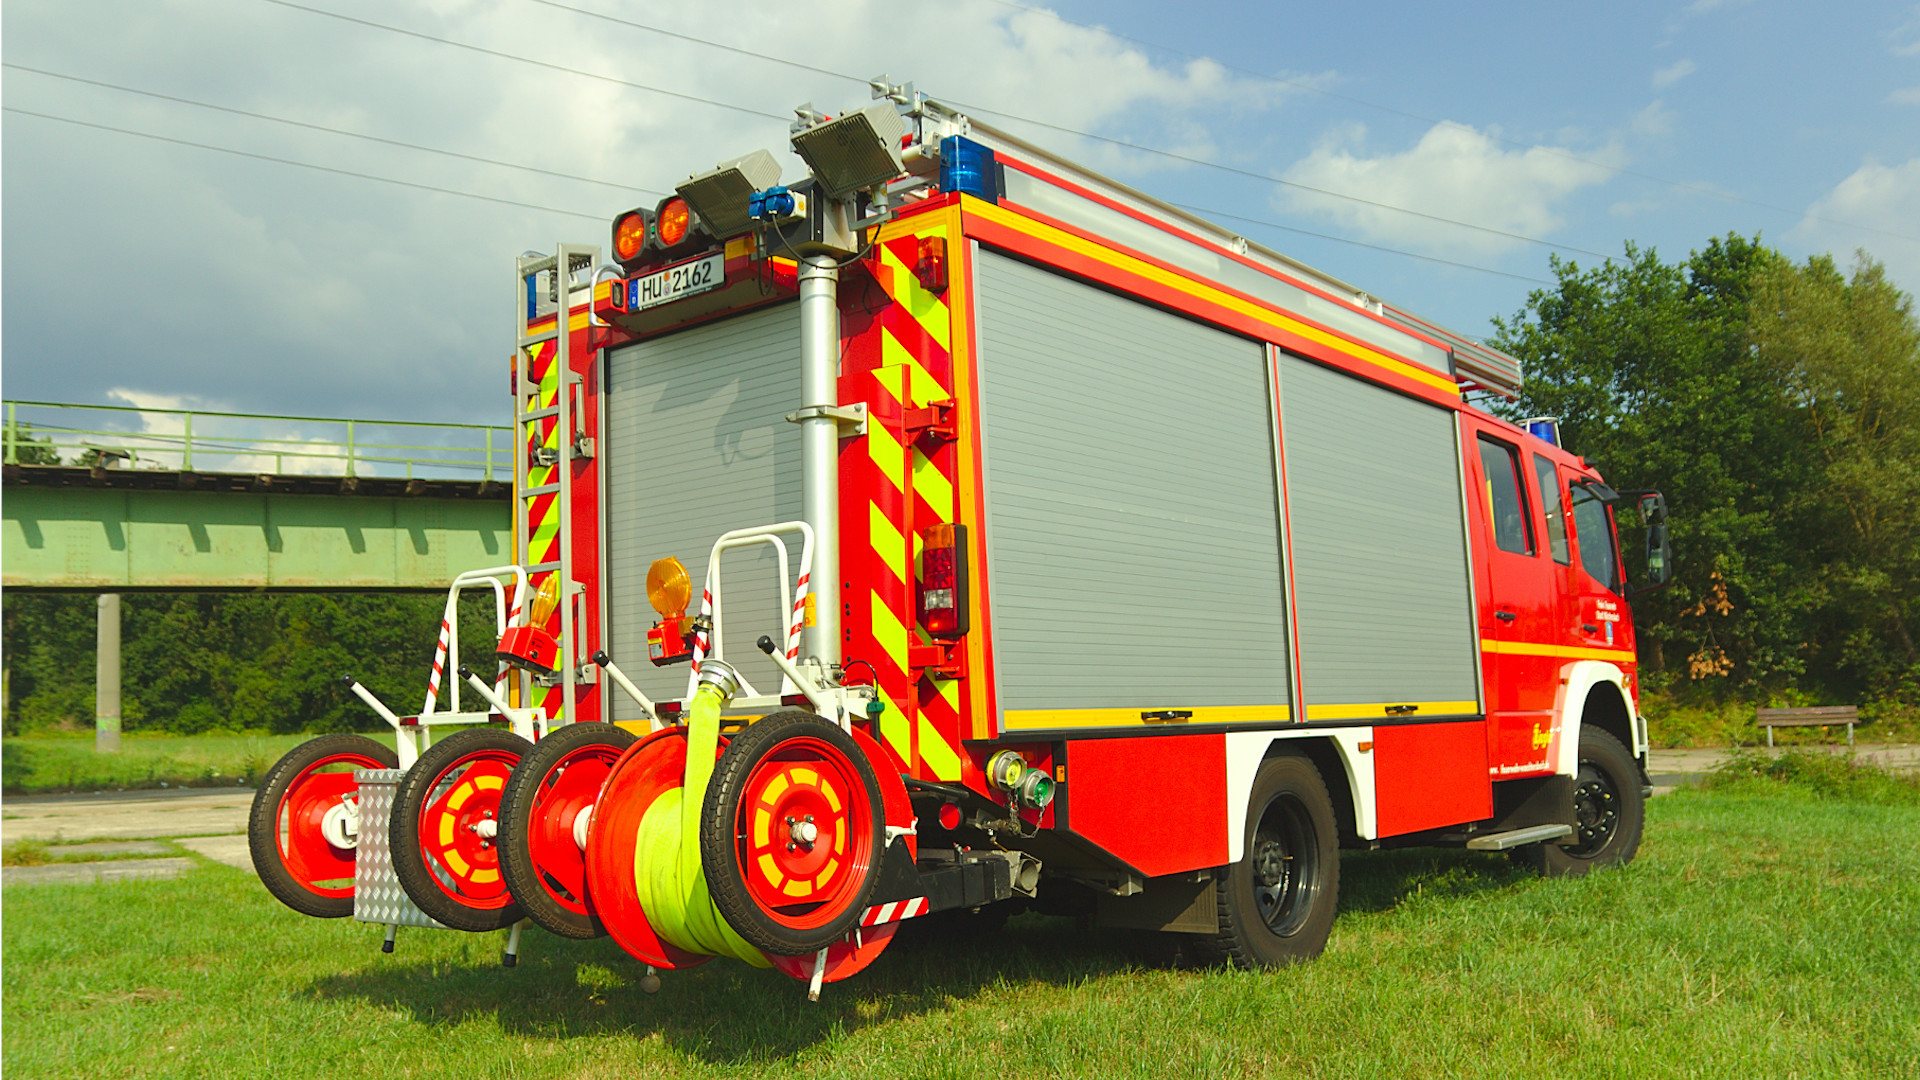 Hilfeleistungslöschfahrzeug HLF 20/16 der Feuerwehr Wächtersbach